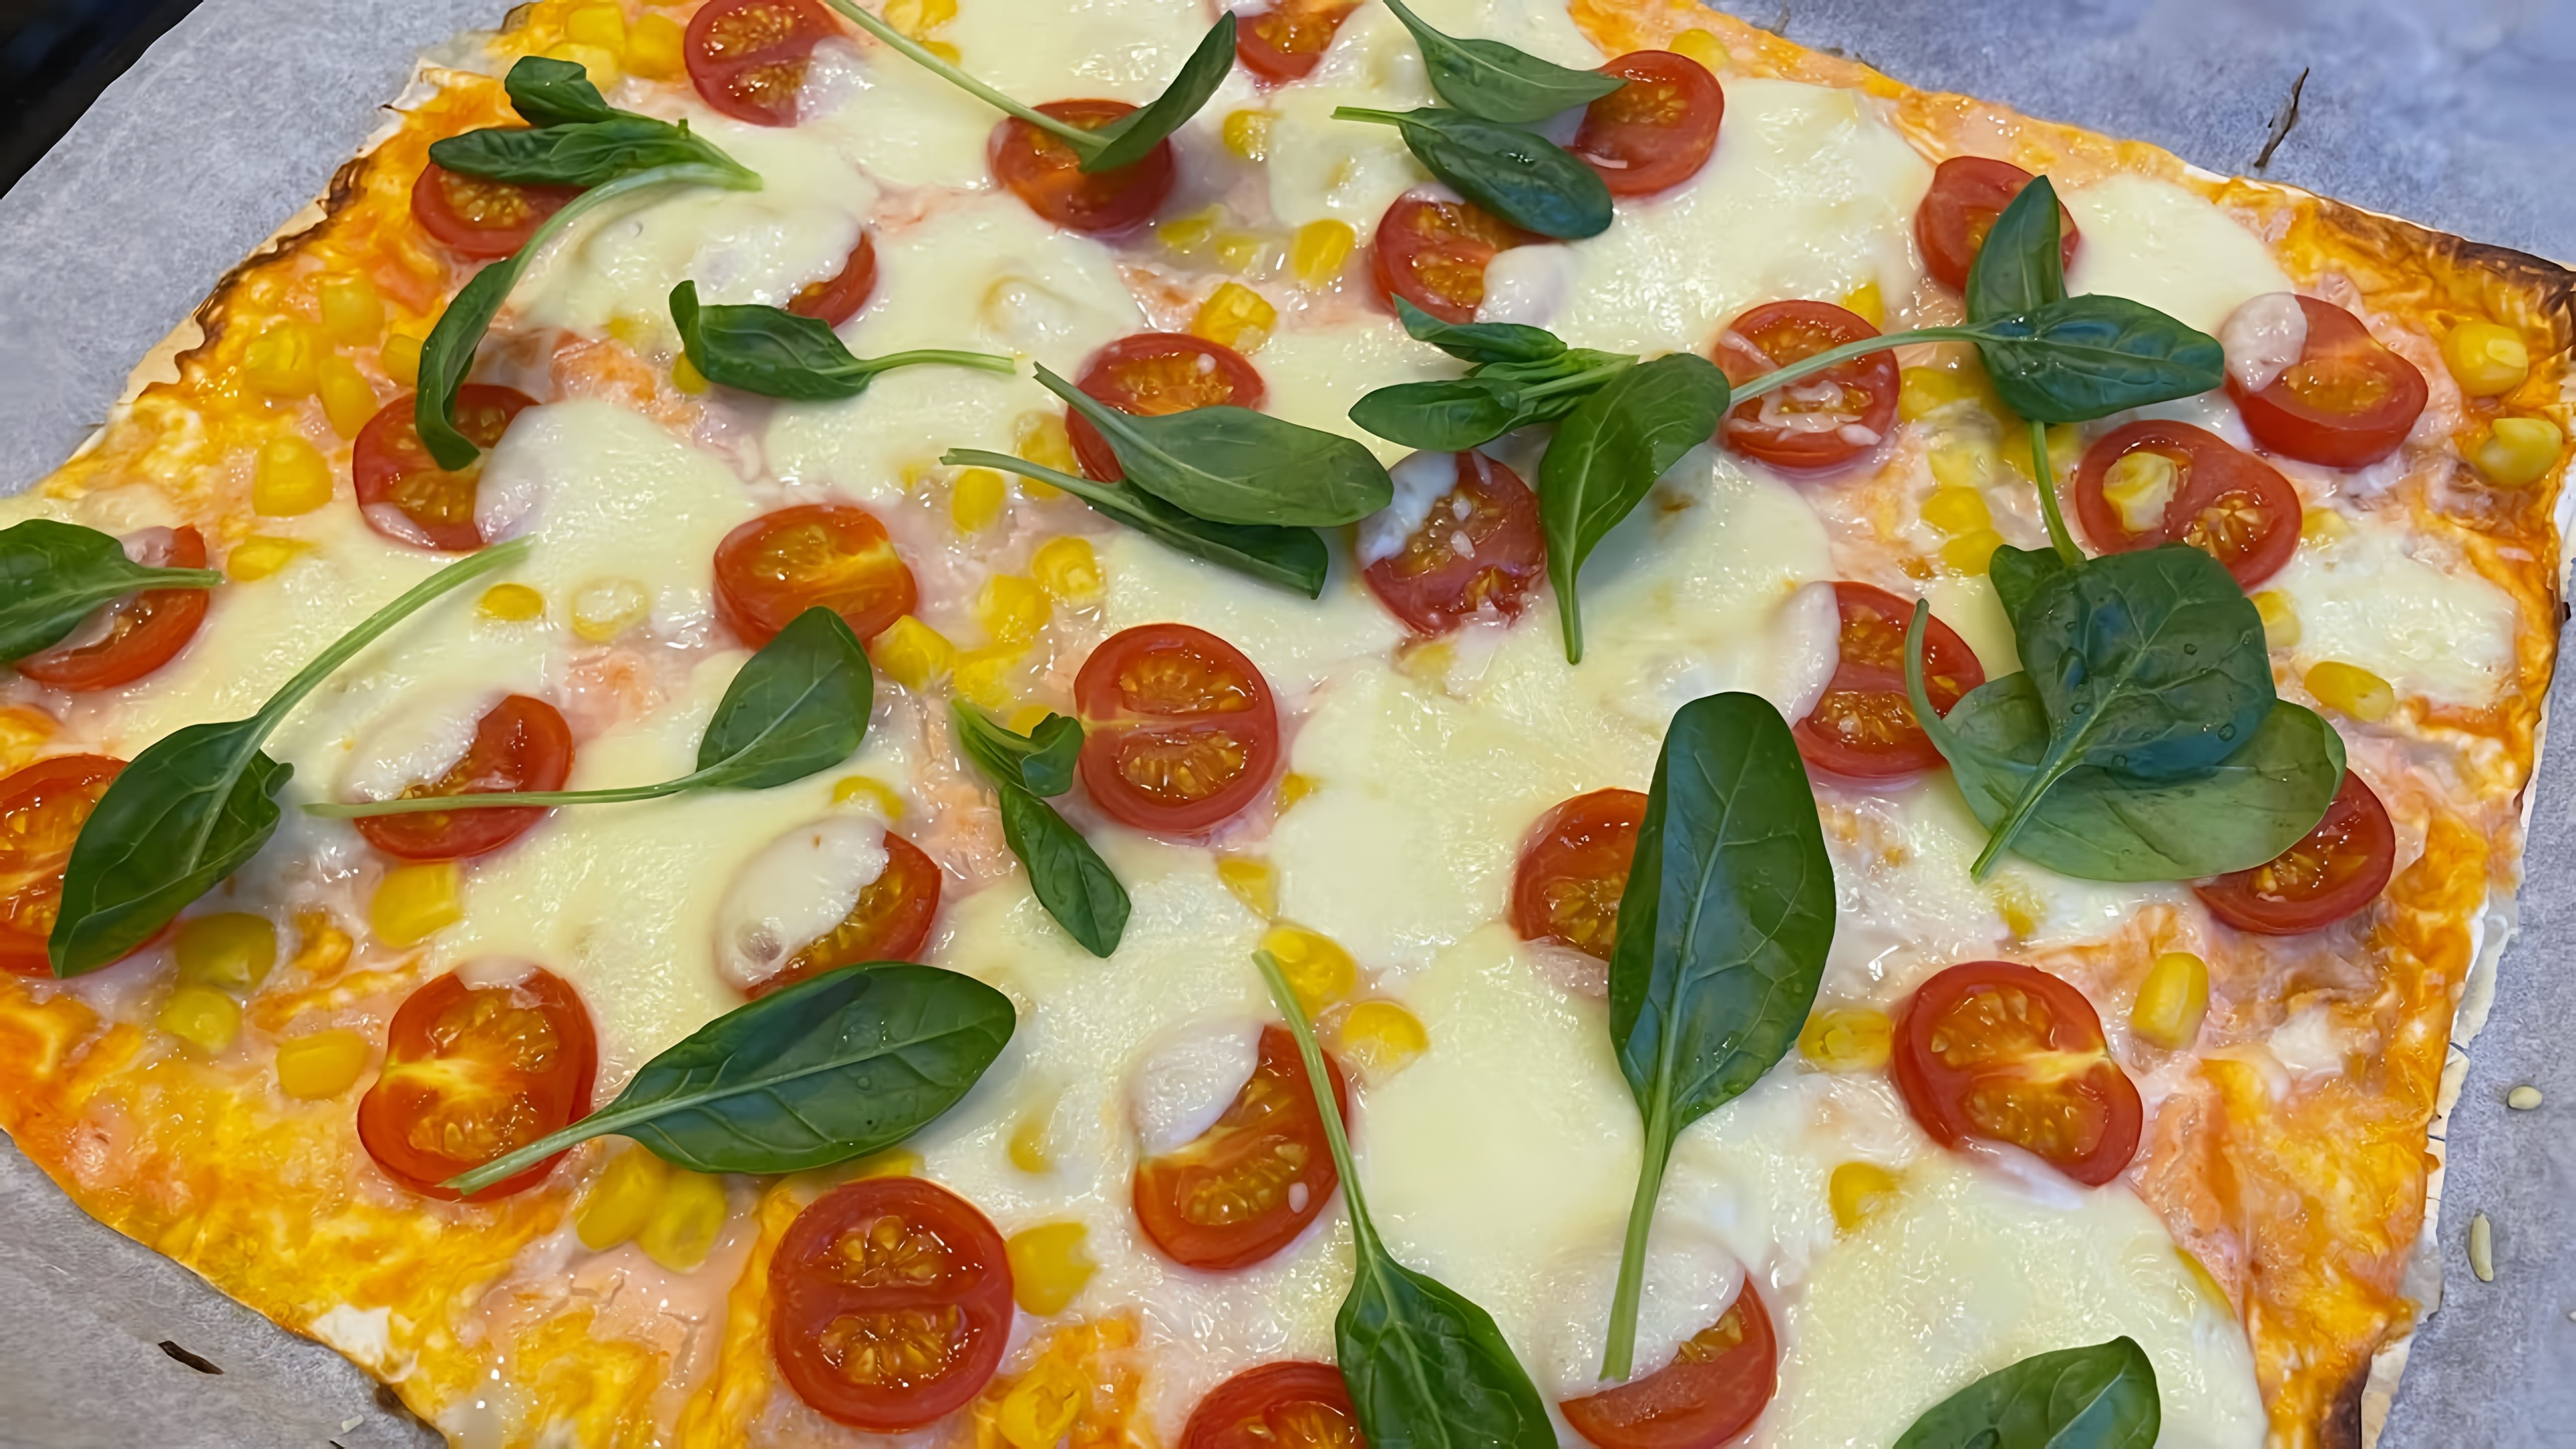 В этом видео демонстрируется рецепт приготовления пиццы из лаваша